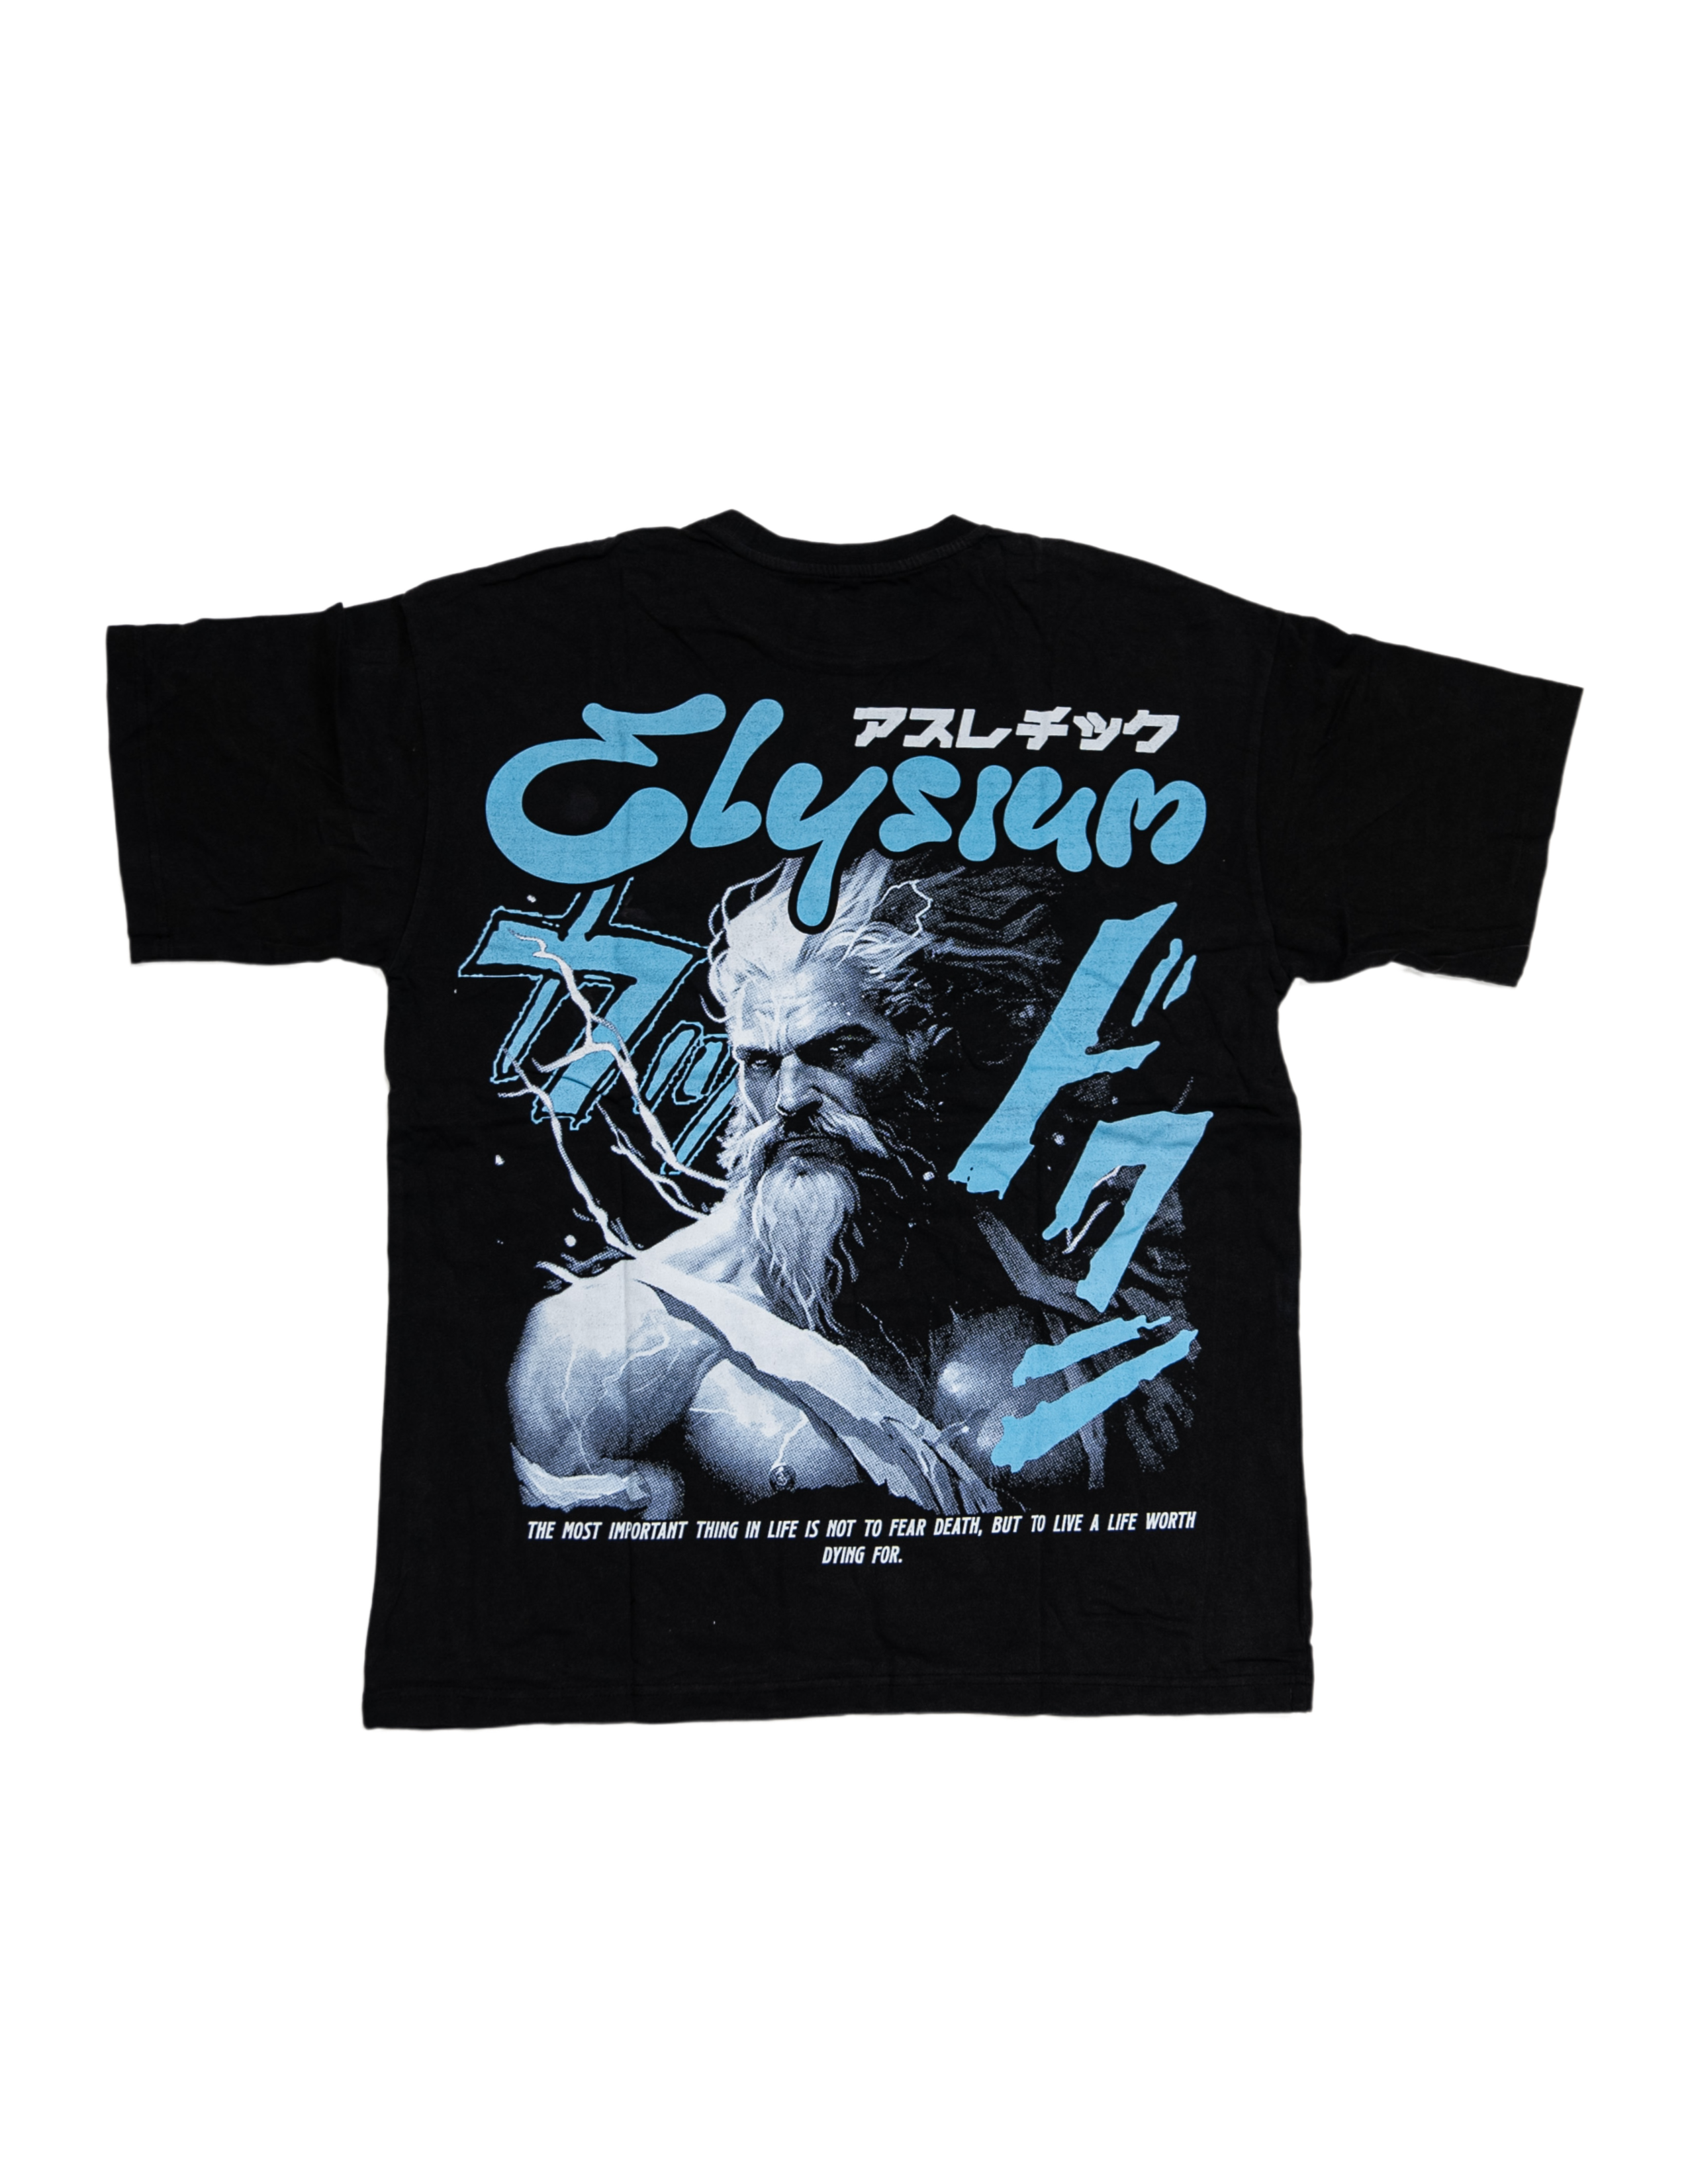 Zeus Retro 80s Vintage T Shirt On Sale 